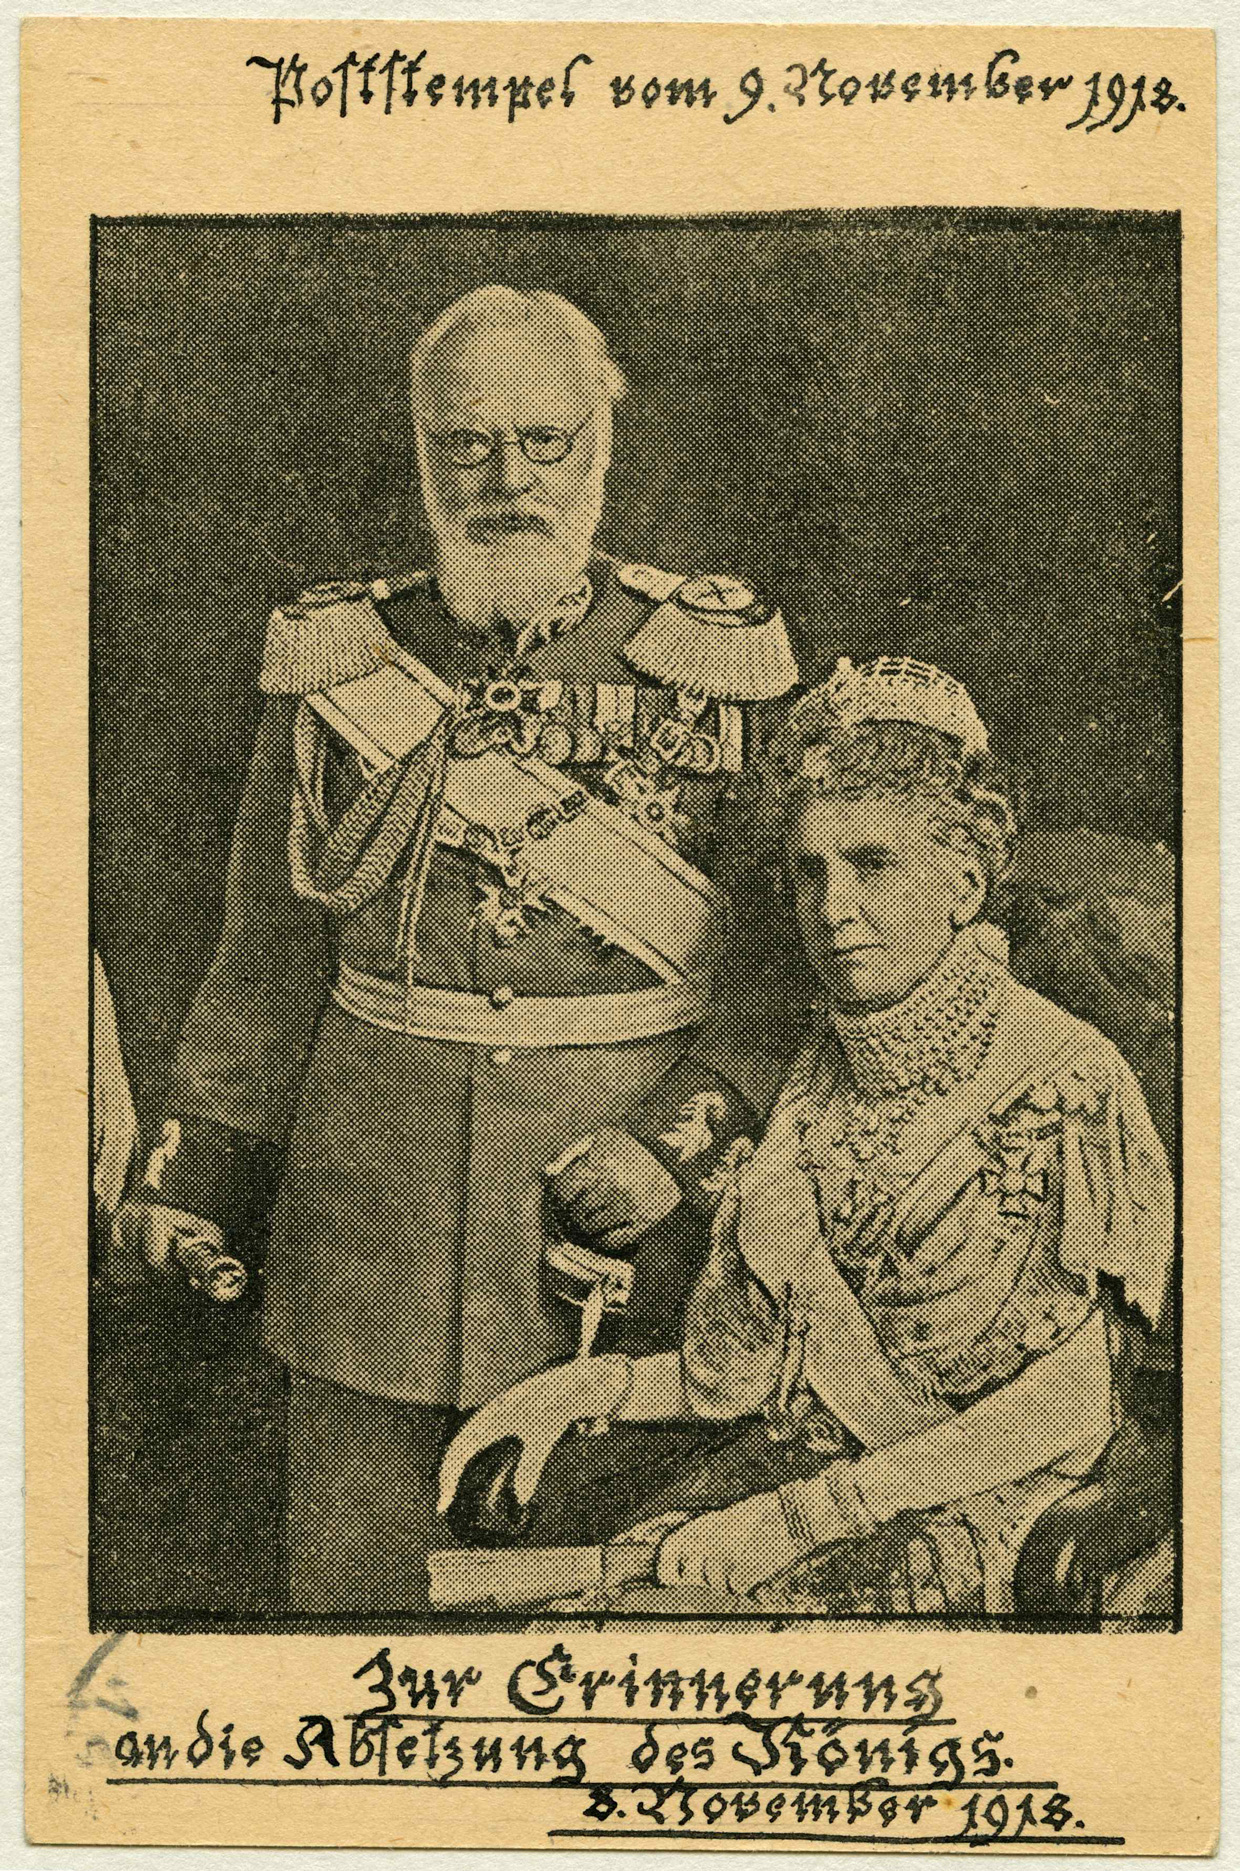 Bildnis des letzten bayerischen Königs Ludwig III. (1845-1921) mit Königin Maria Theresia von Bayern (1849-1919), Postkarte / Autotypie, Fotoatelier Elvira, November 1918